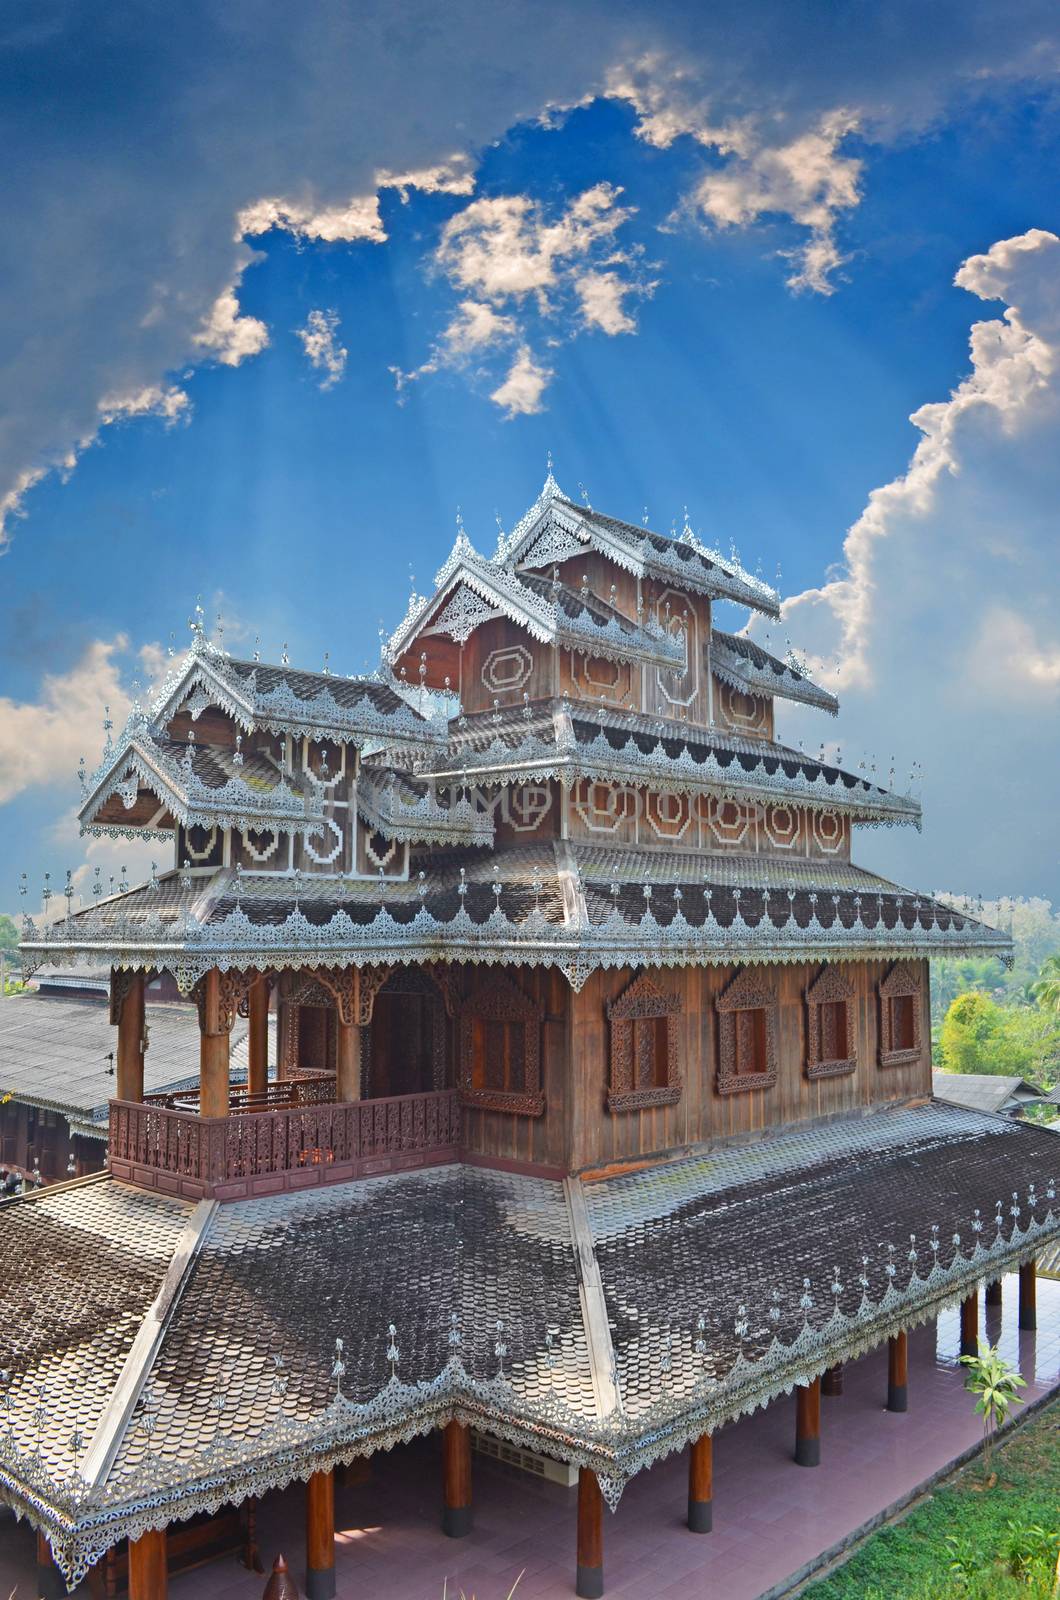 A Architecture of Wat Tai Yai's Buddhist Temple.